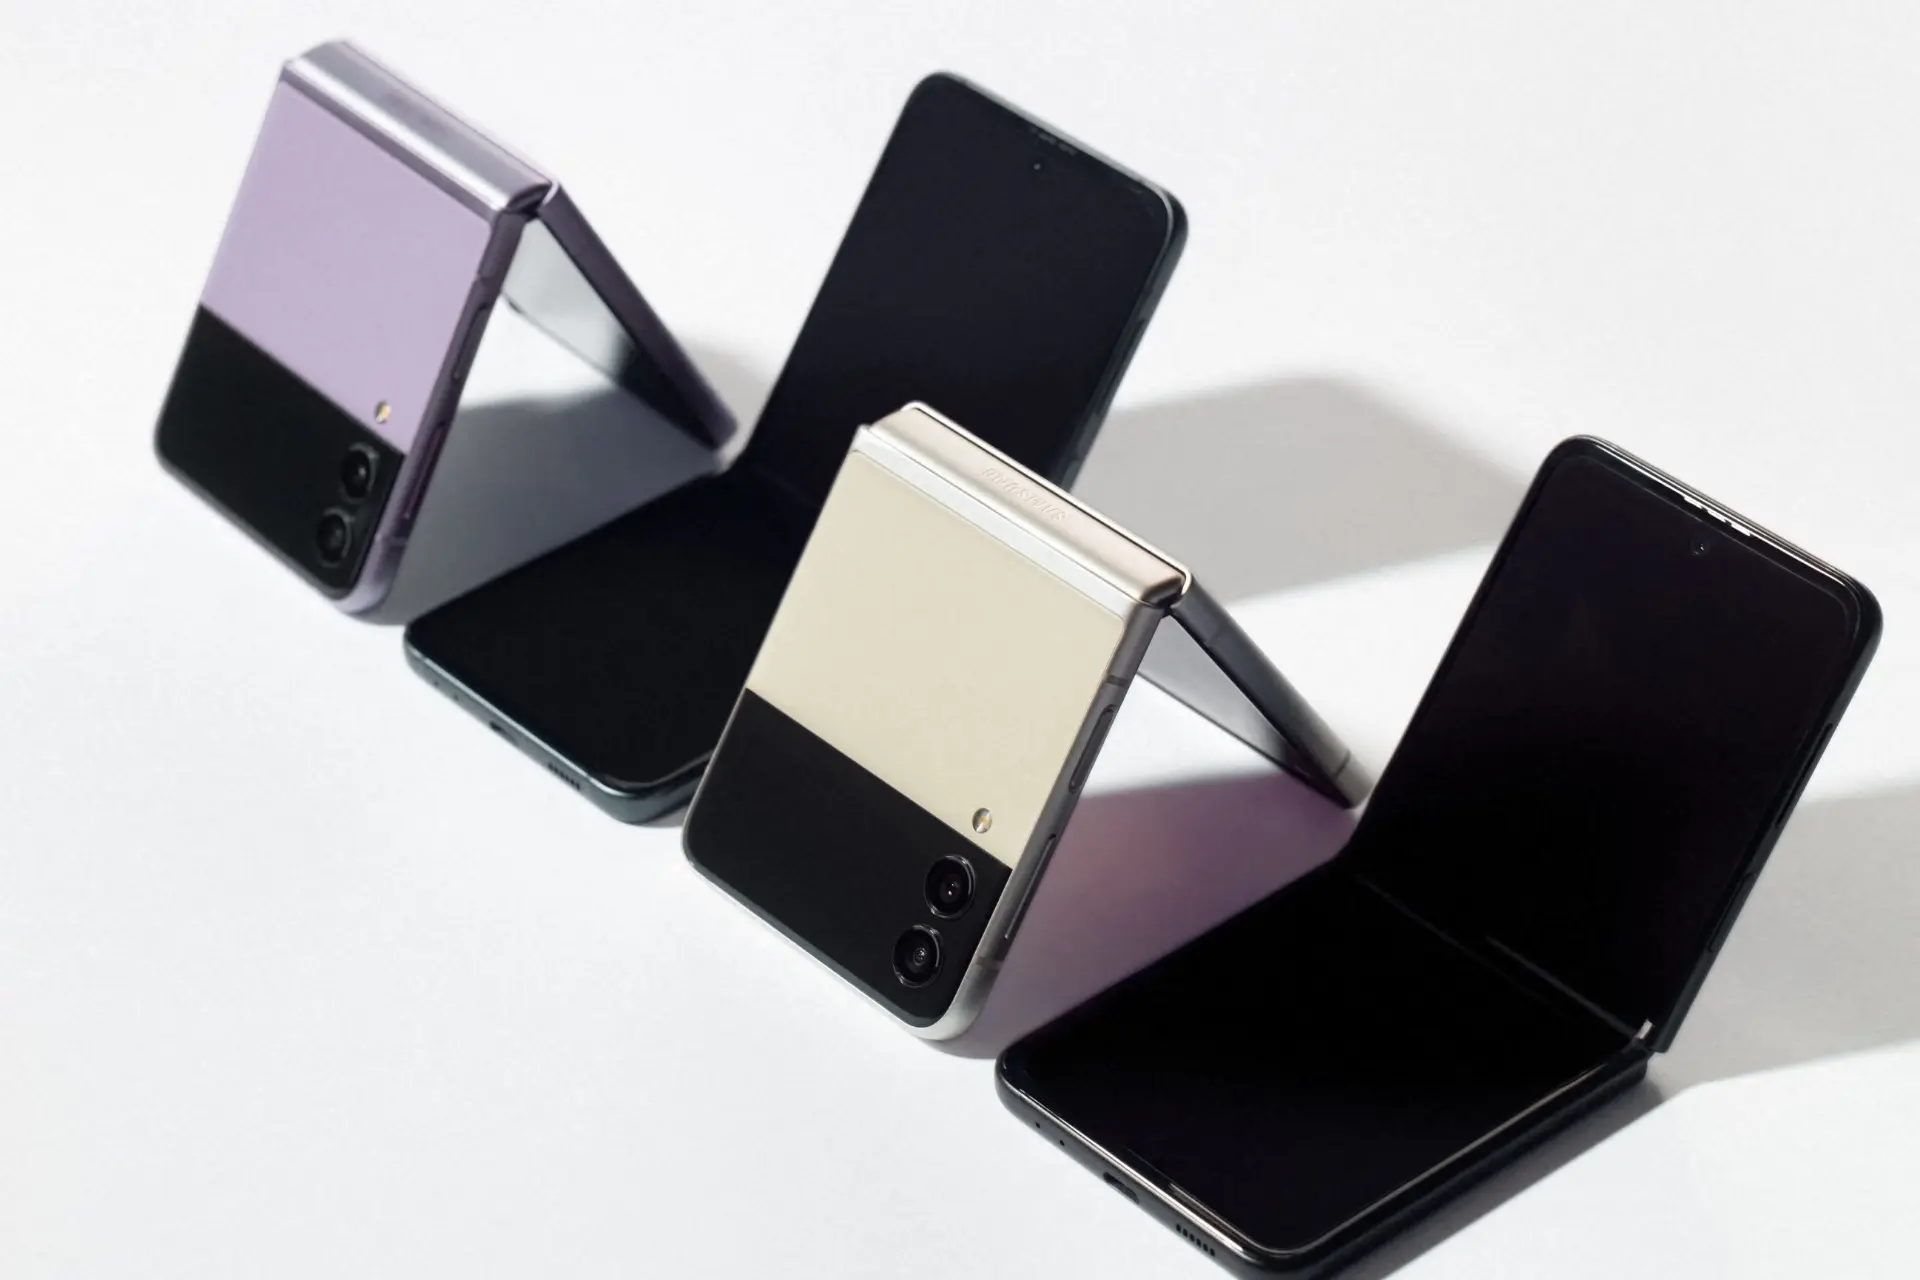 رنگ های مختلف گوشی موبایل گلکسی زد فلیپ 3 سامسونگ / Samsung Galaxy Z Flip 3